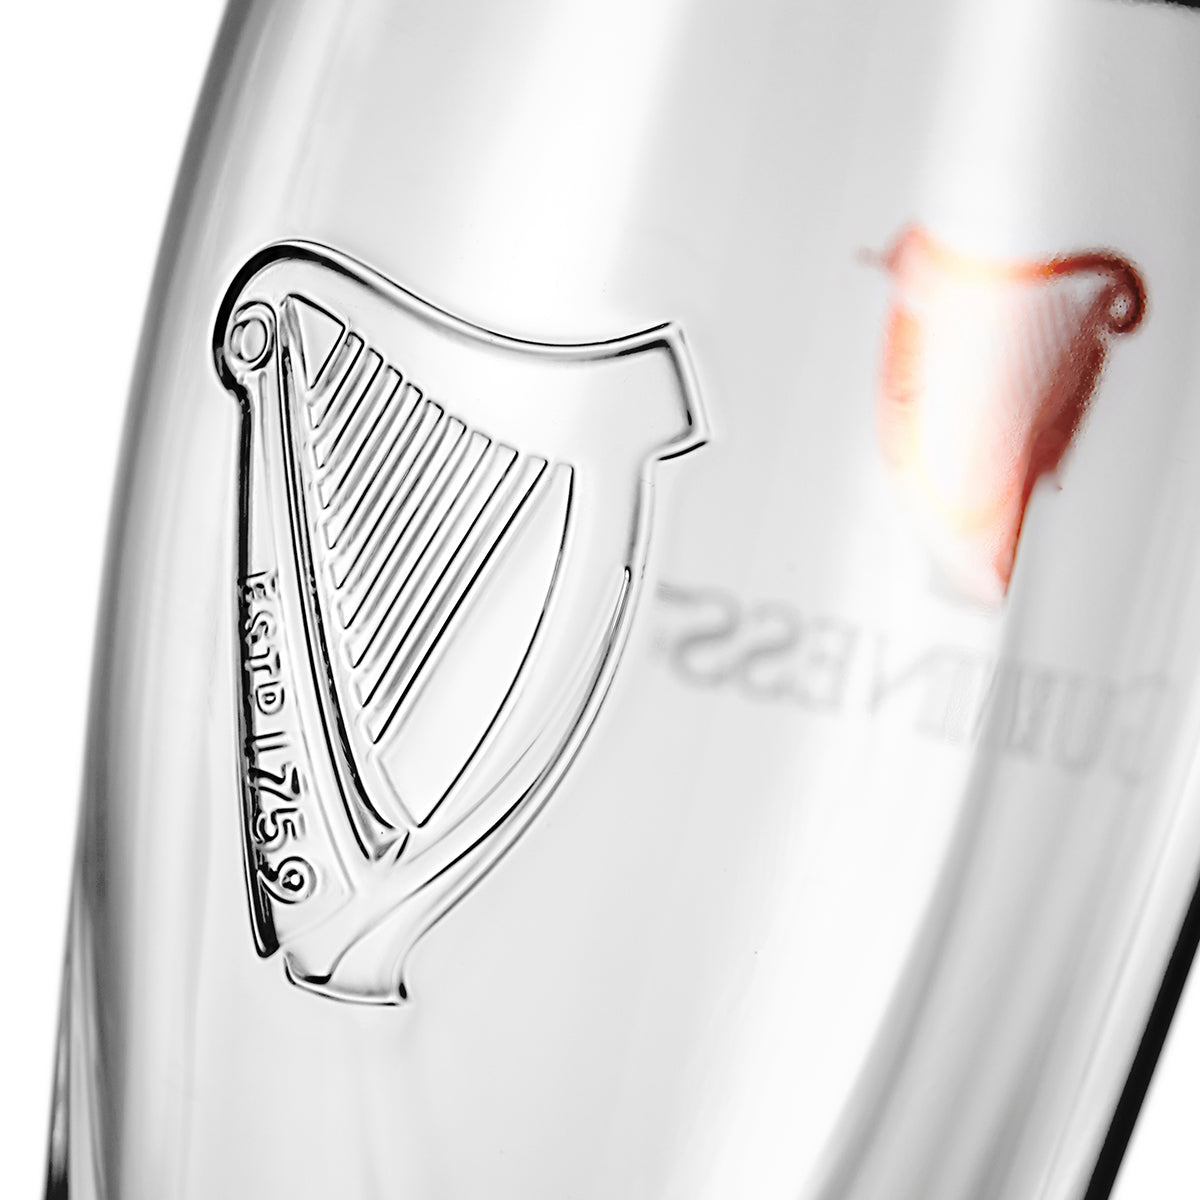 Guinness Pint Glass - 12 Pack